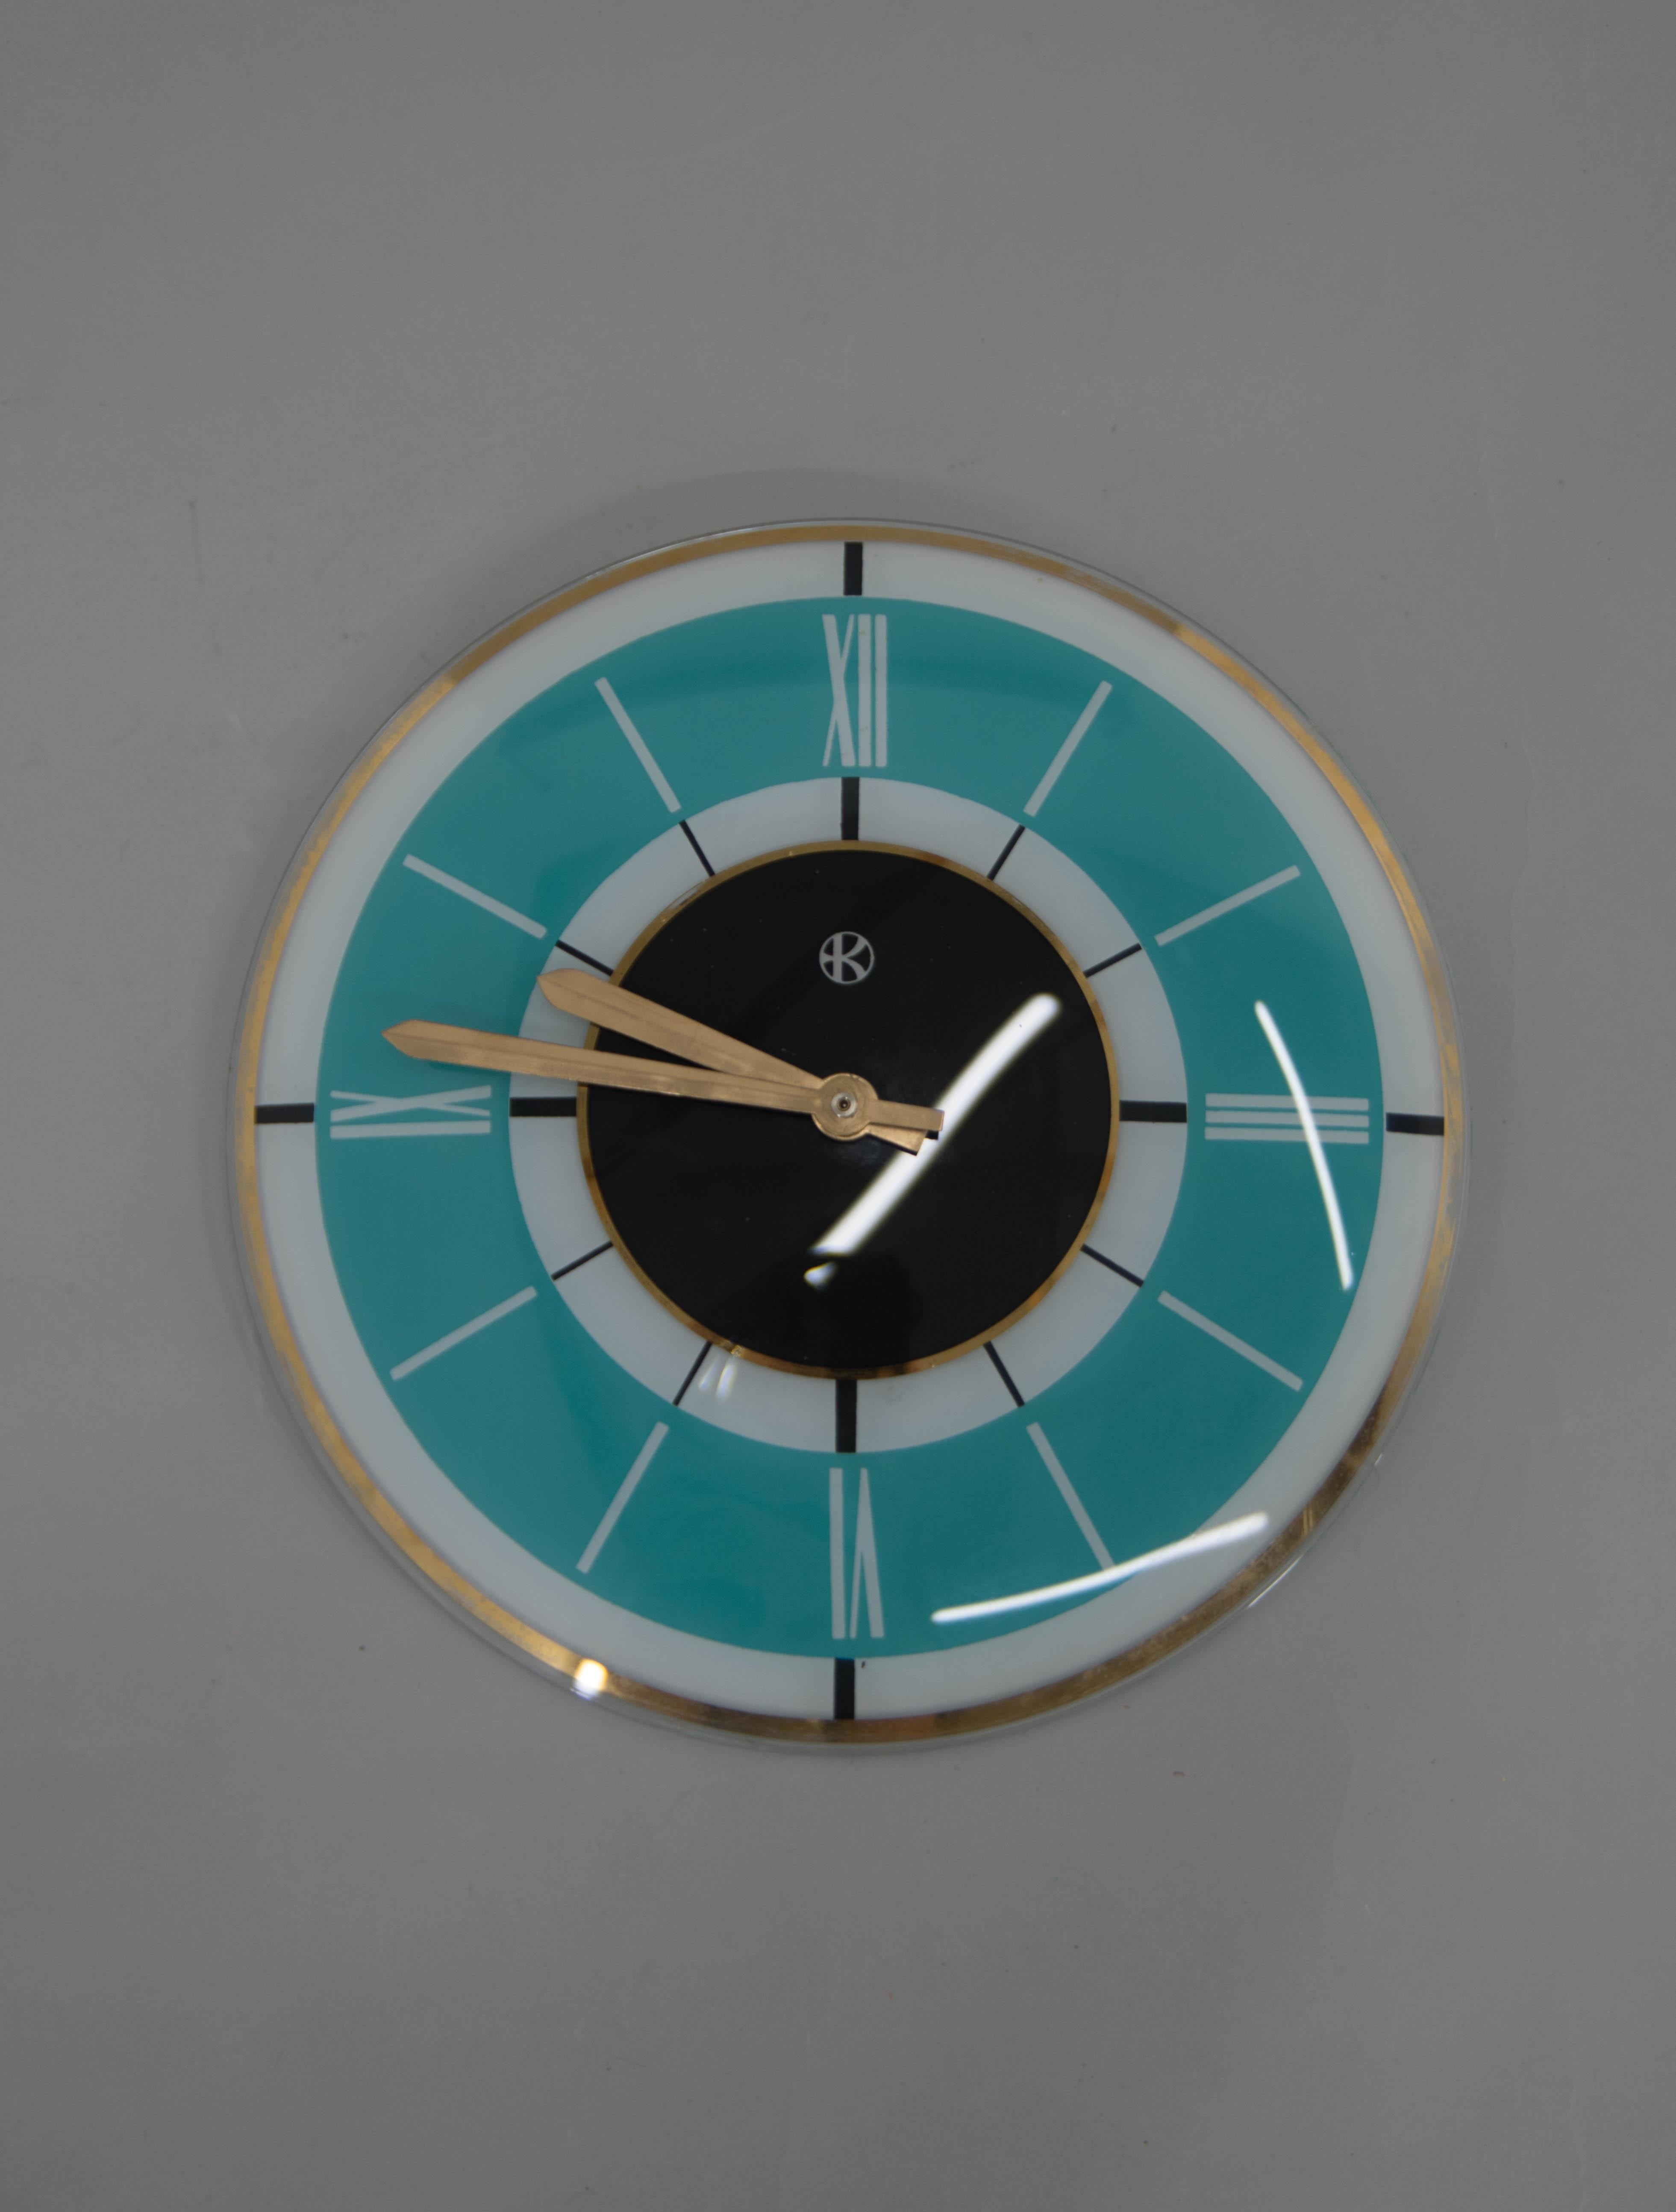 Horloge murale fabriquée par Klenoty en Tchécoslovaquie dans les années 1960.
Fabriqué en verre et en laiton.
Entièrement fonctionnel.